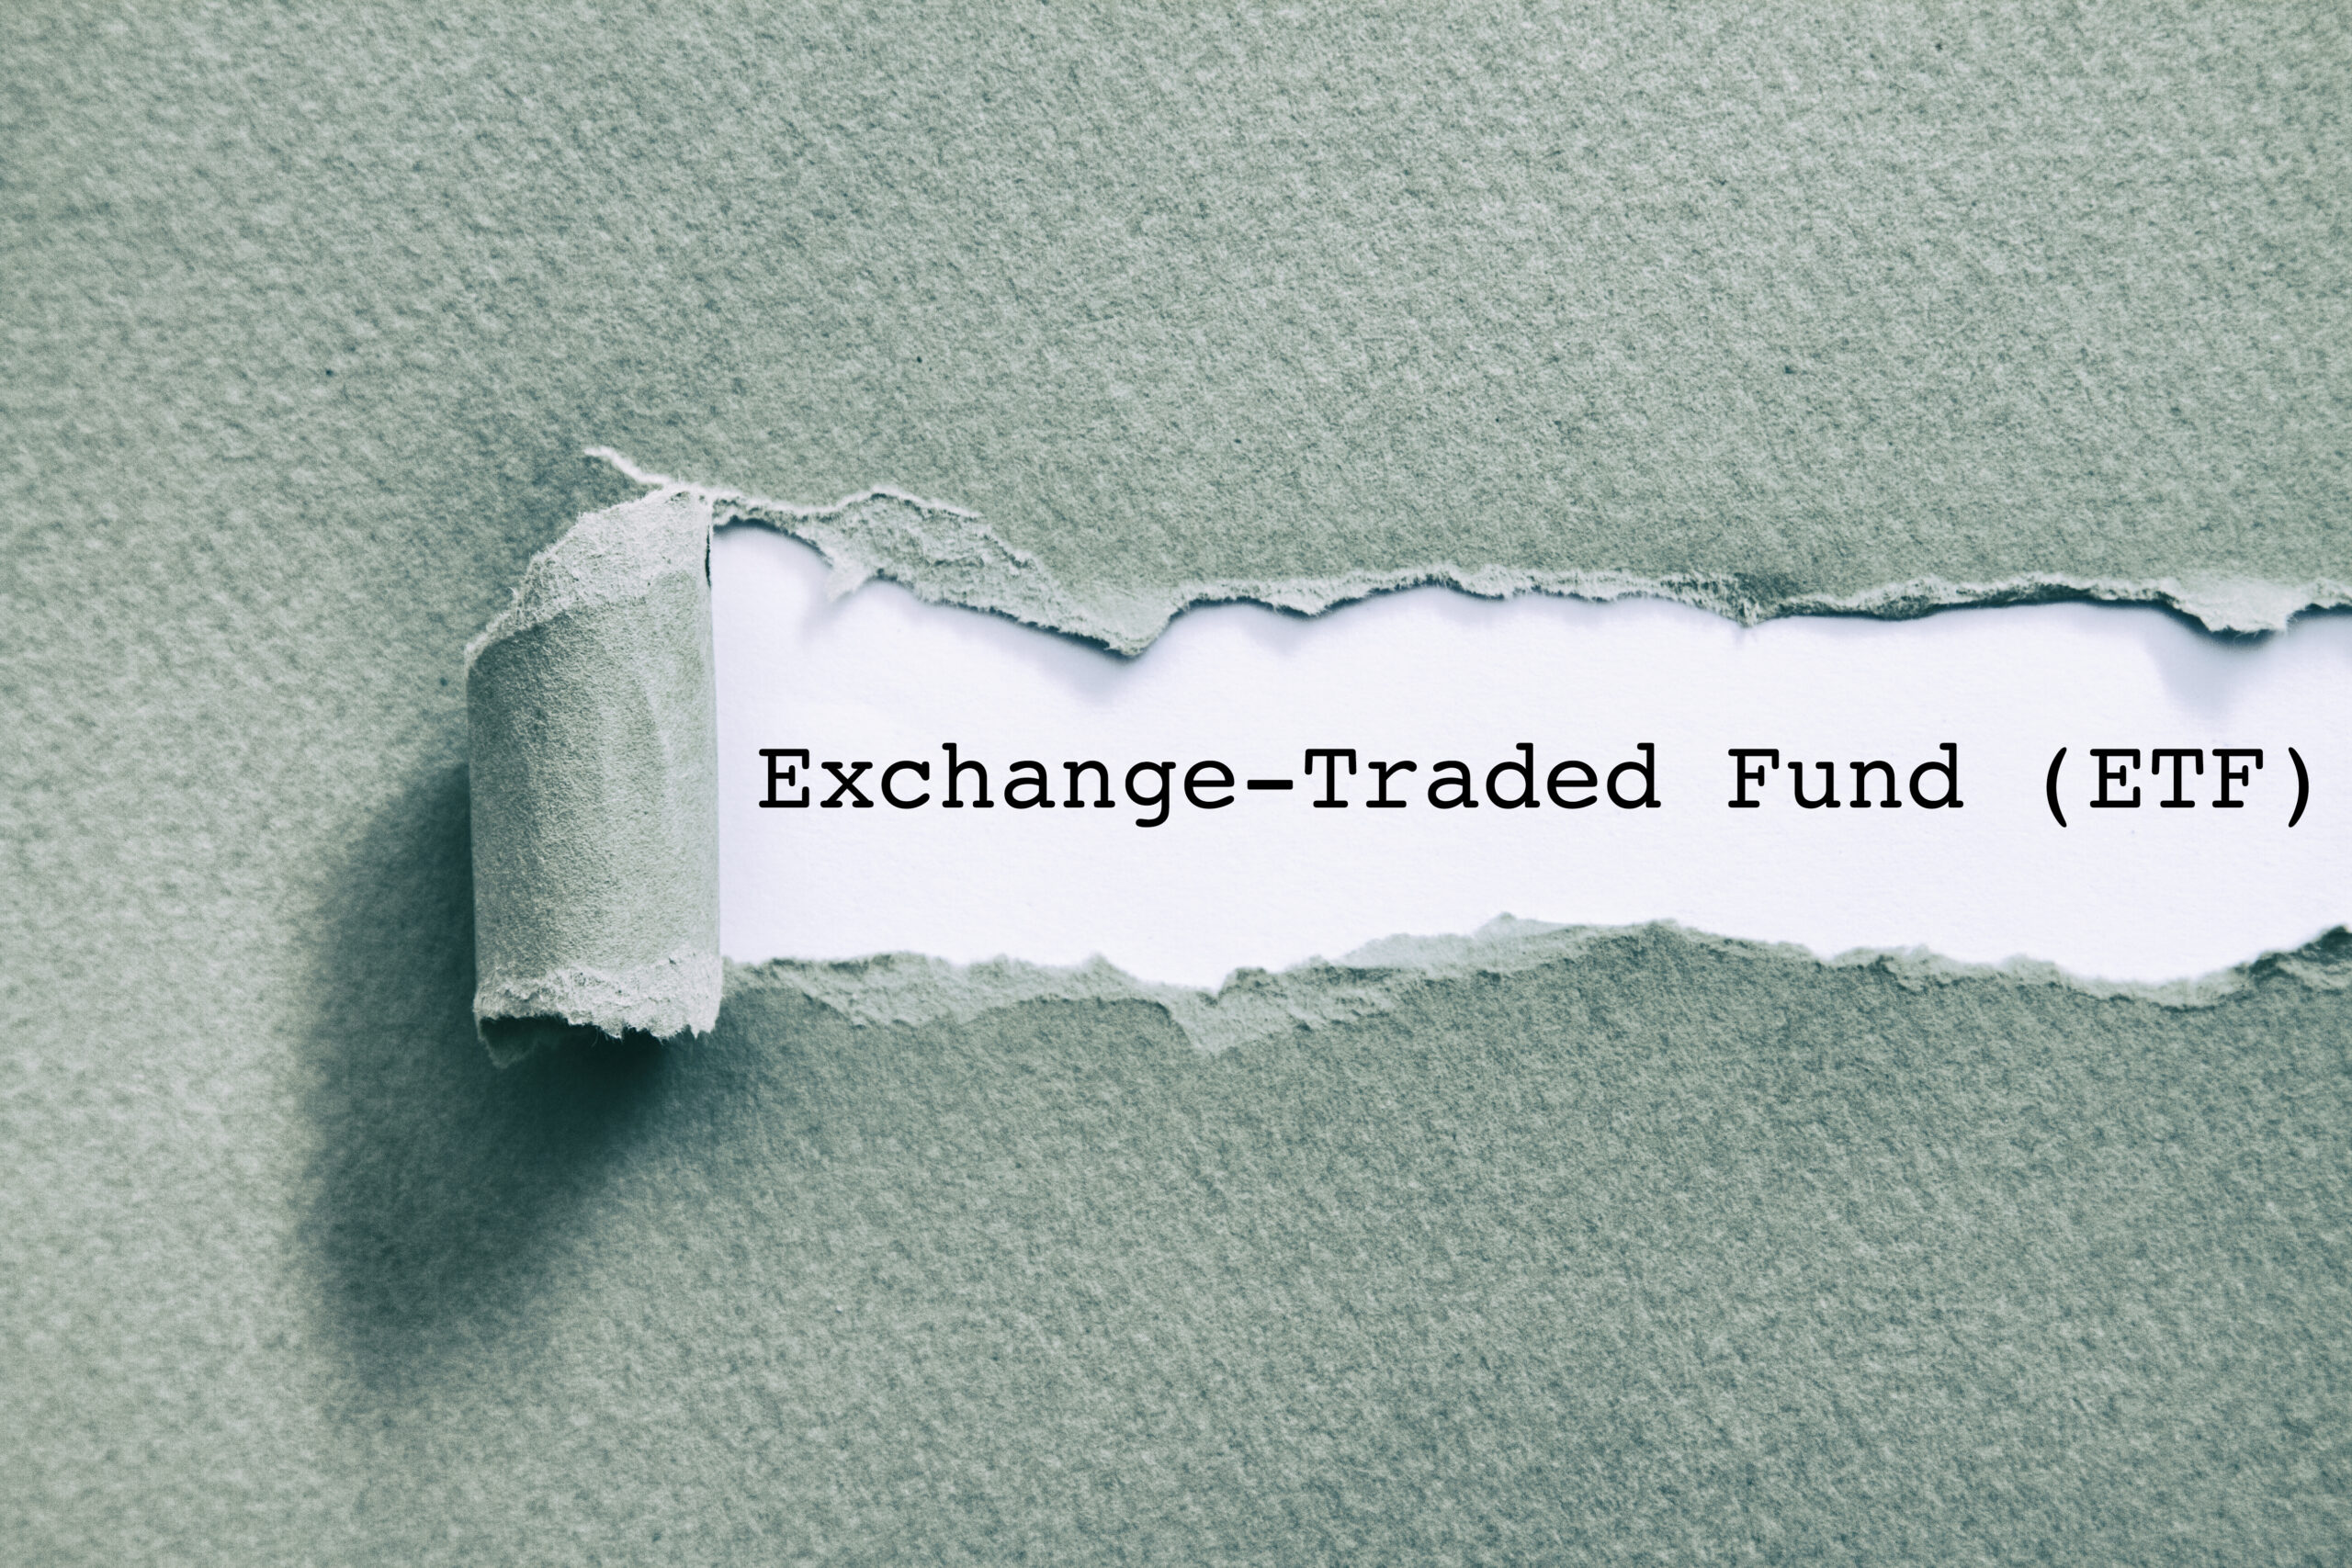 Exchange Traded Fund (ETF) written under torn paper.